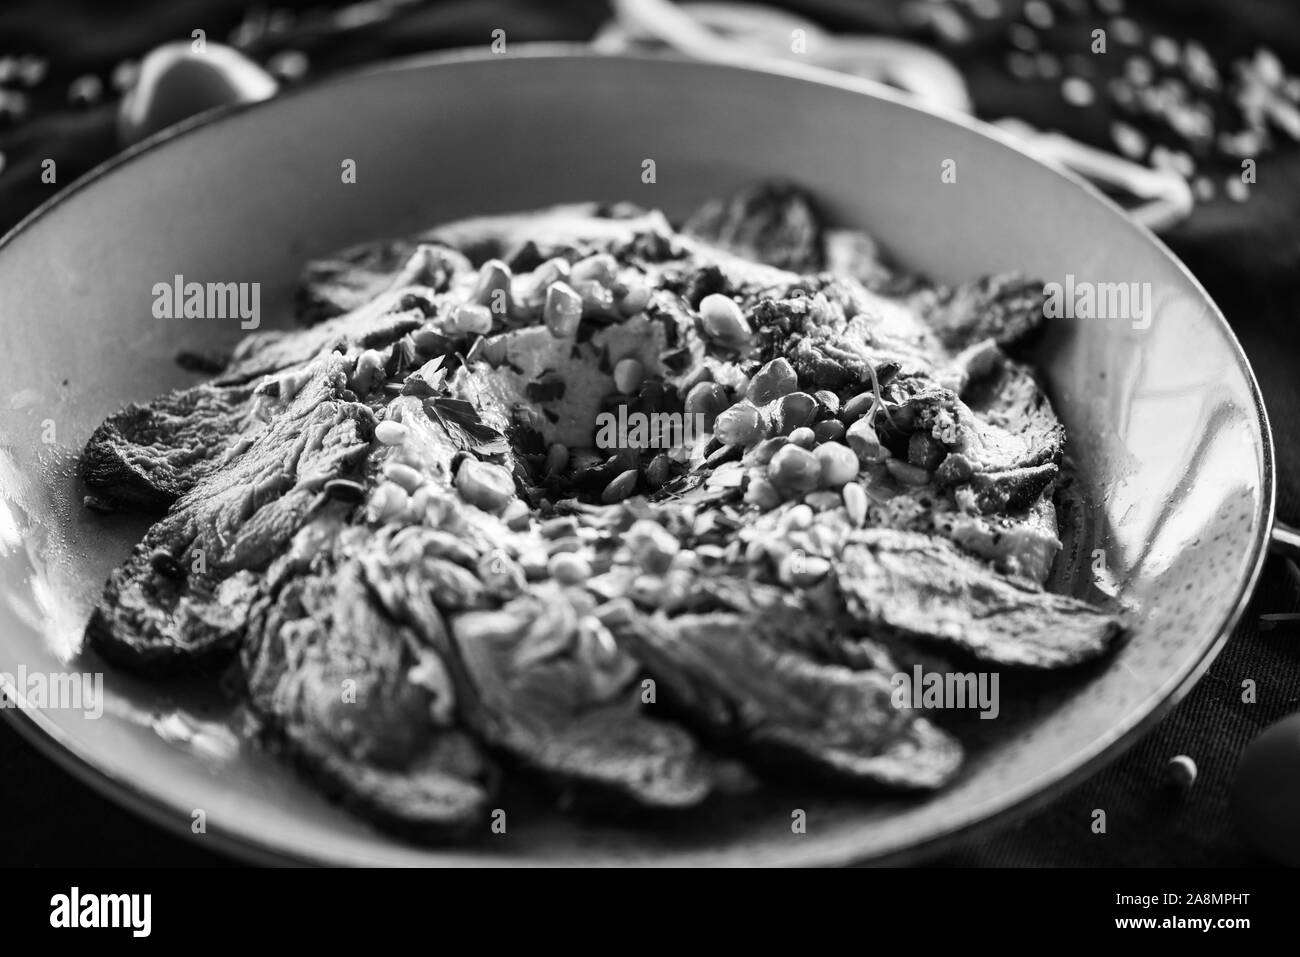 plat de houmous libanais avec bœuf rôti et graines de grenade Banque D'Images